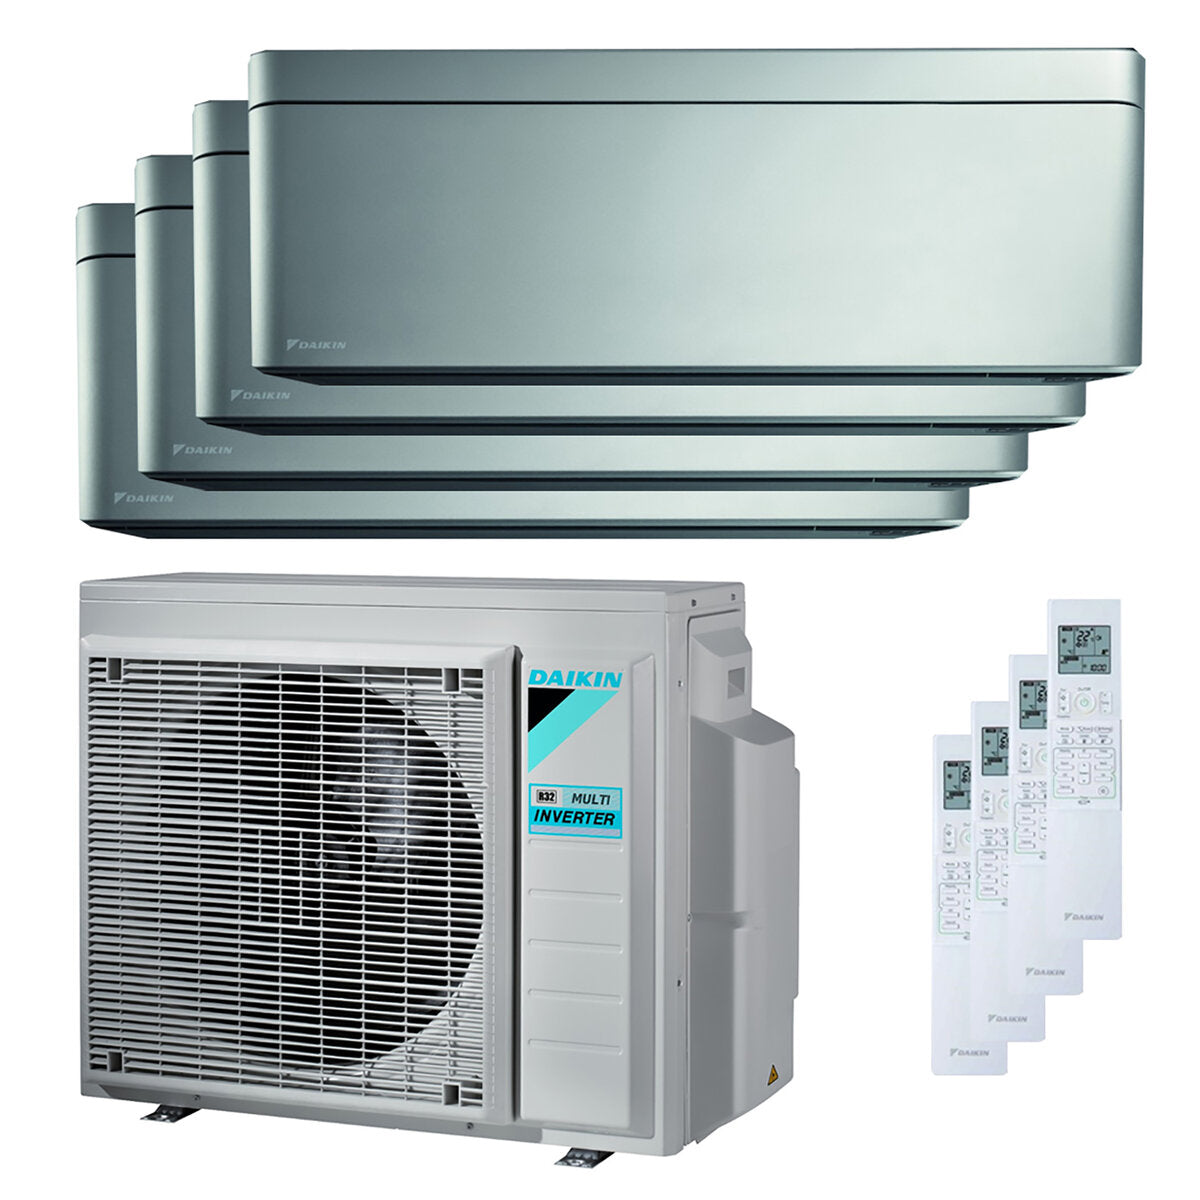 Daikin Stilvolle quadratische Split-Klimaanlage 9000 + 9000 + 12000 + 12000 BTU Wechselrichter A ++ WLAN-Außengerät 8,0 kW